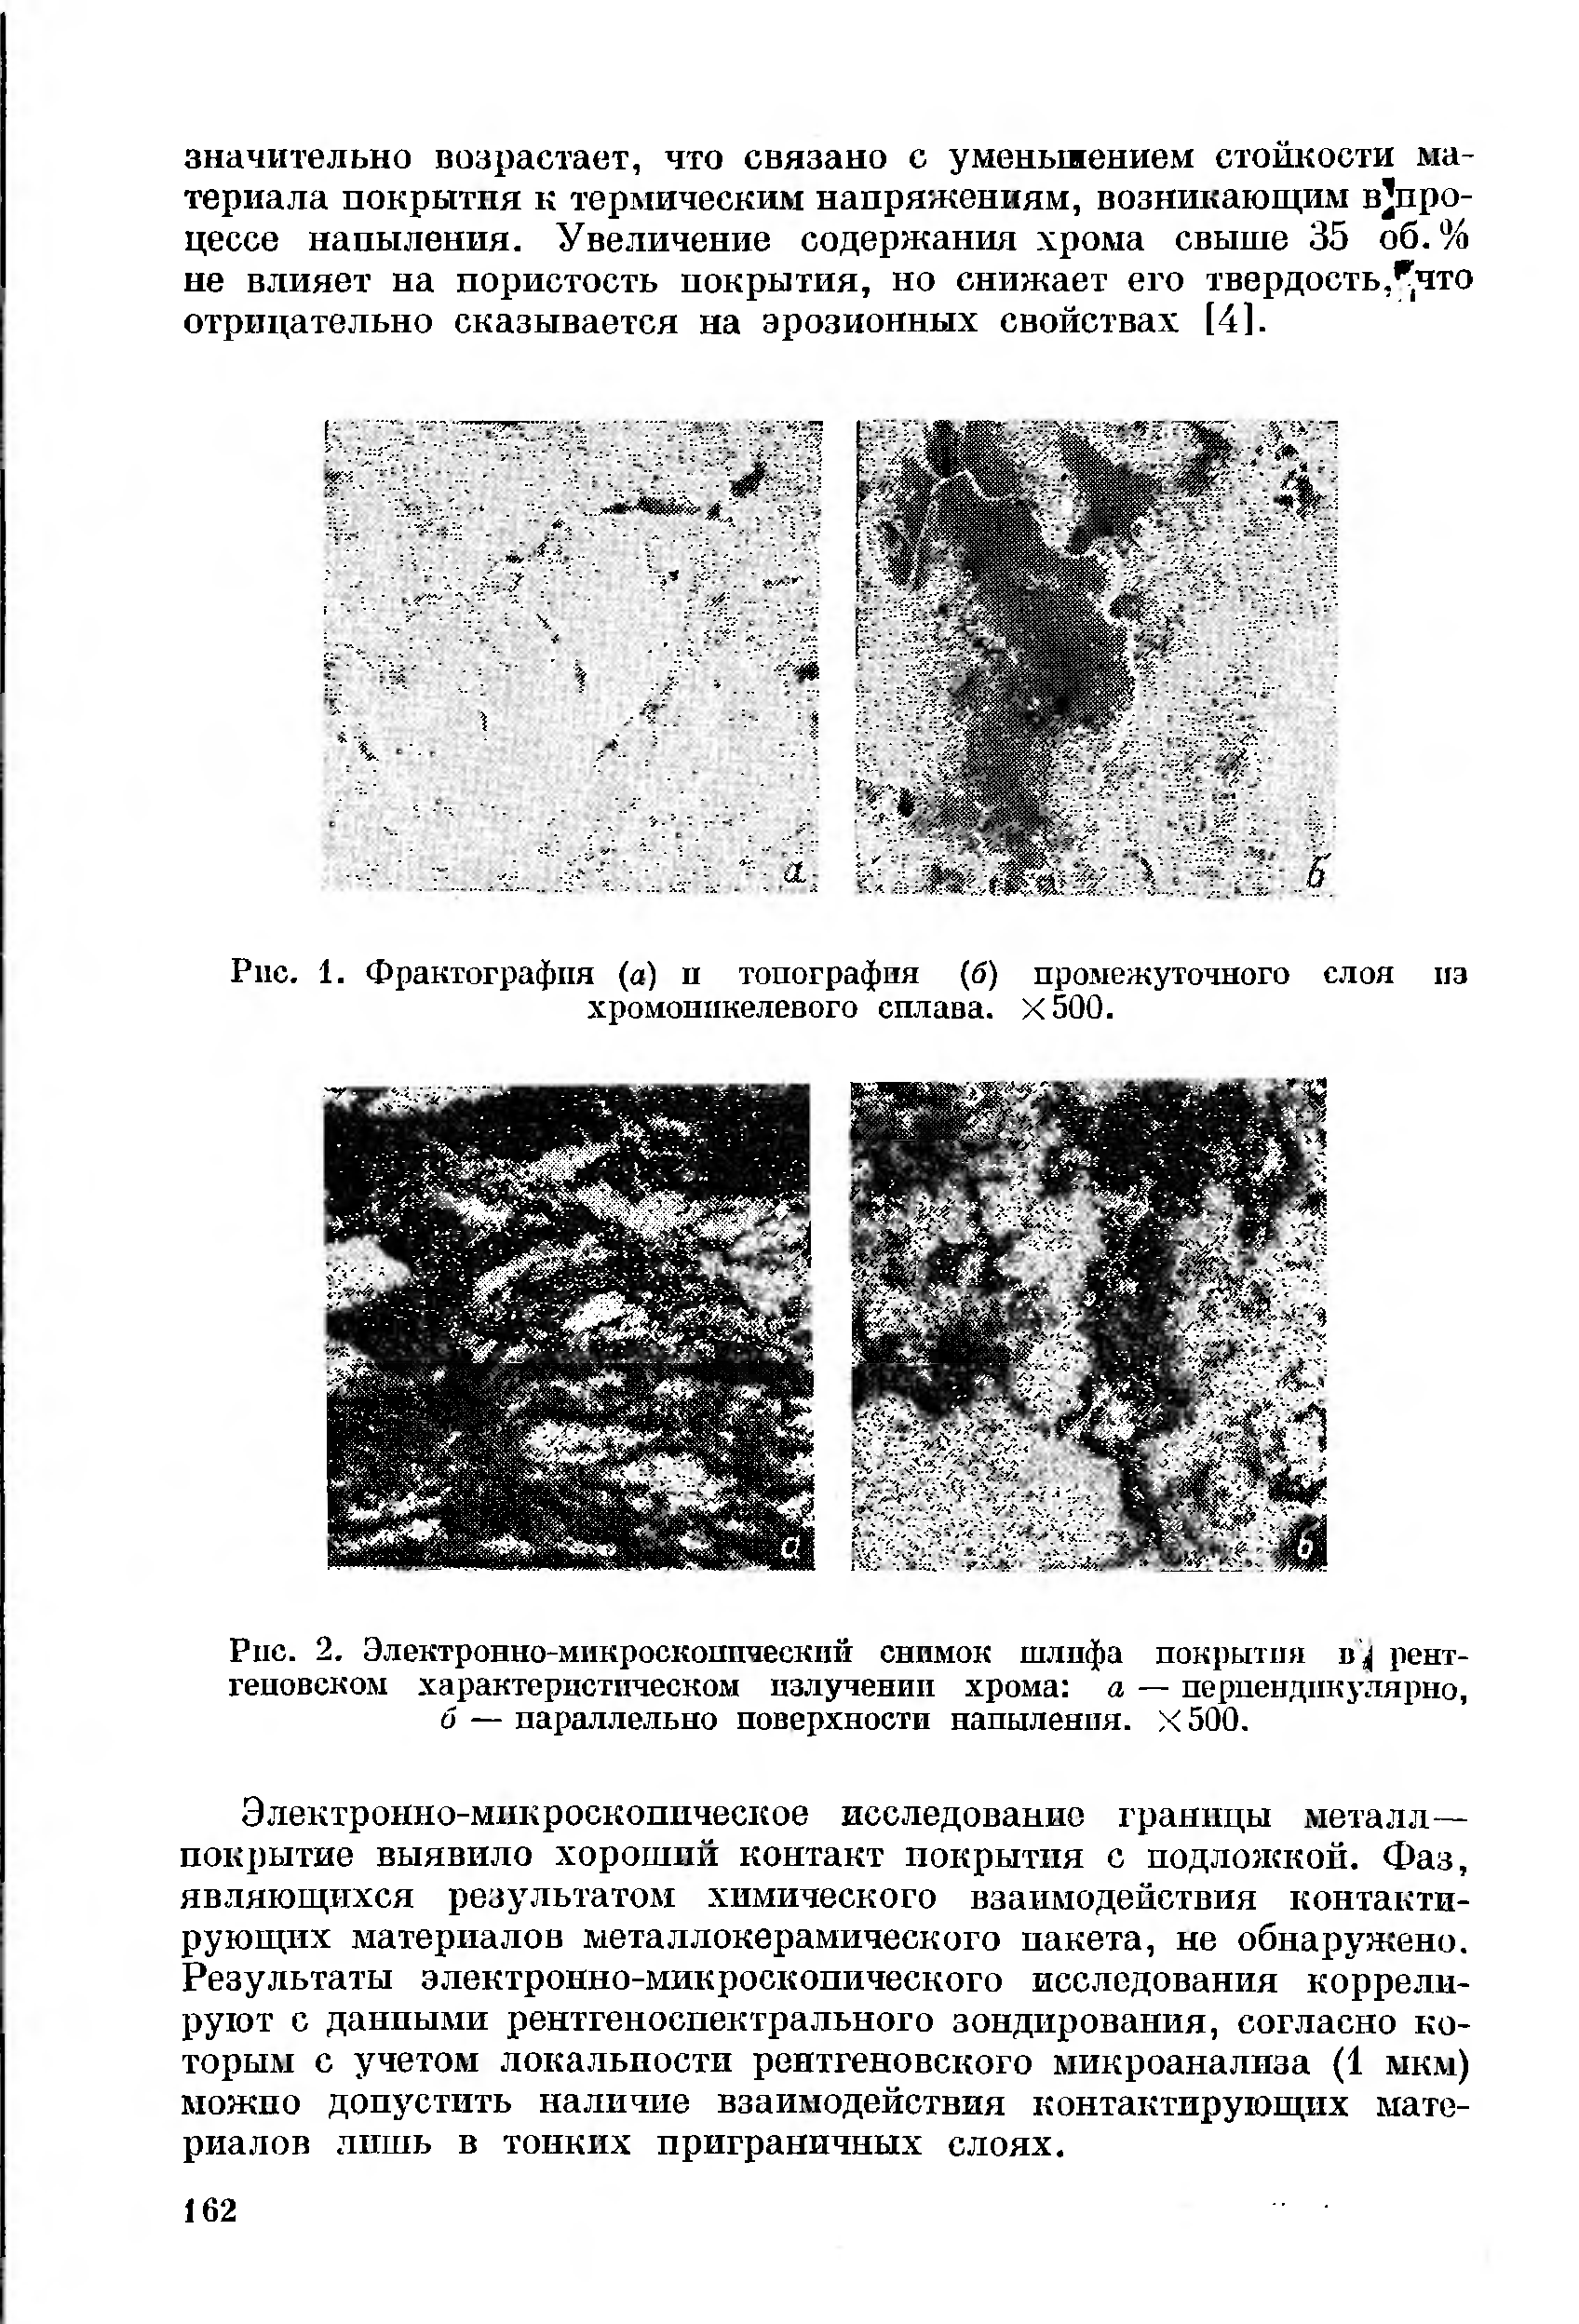 Рис. 2. Электронно-микроскопический снимок шлпфа покрытия в рентгеновском характеристическом излучении хрома а — перпендикулярно,
